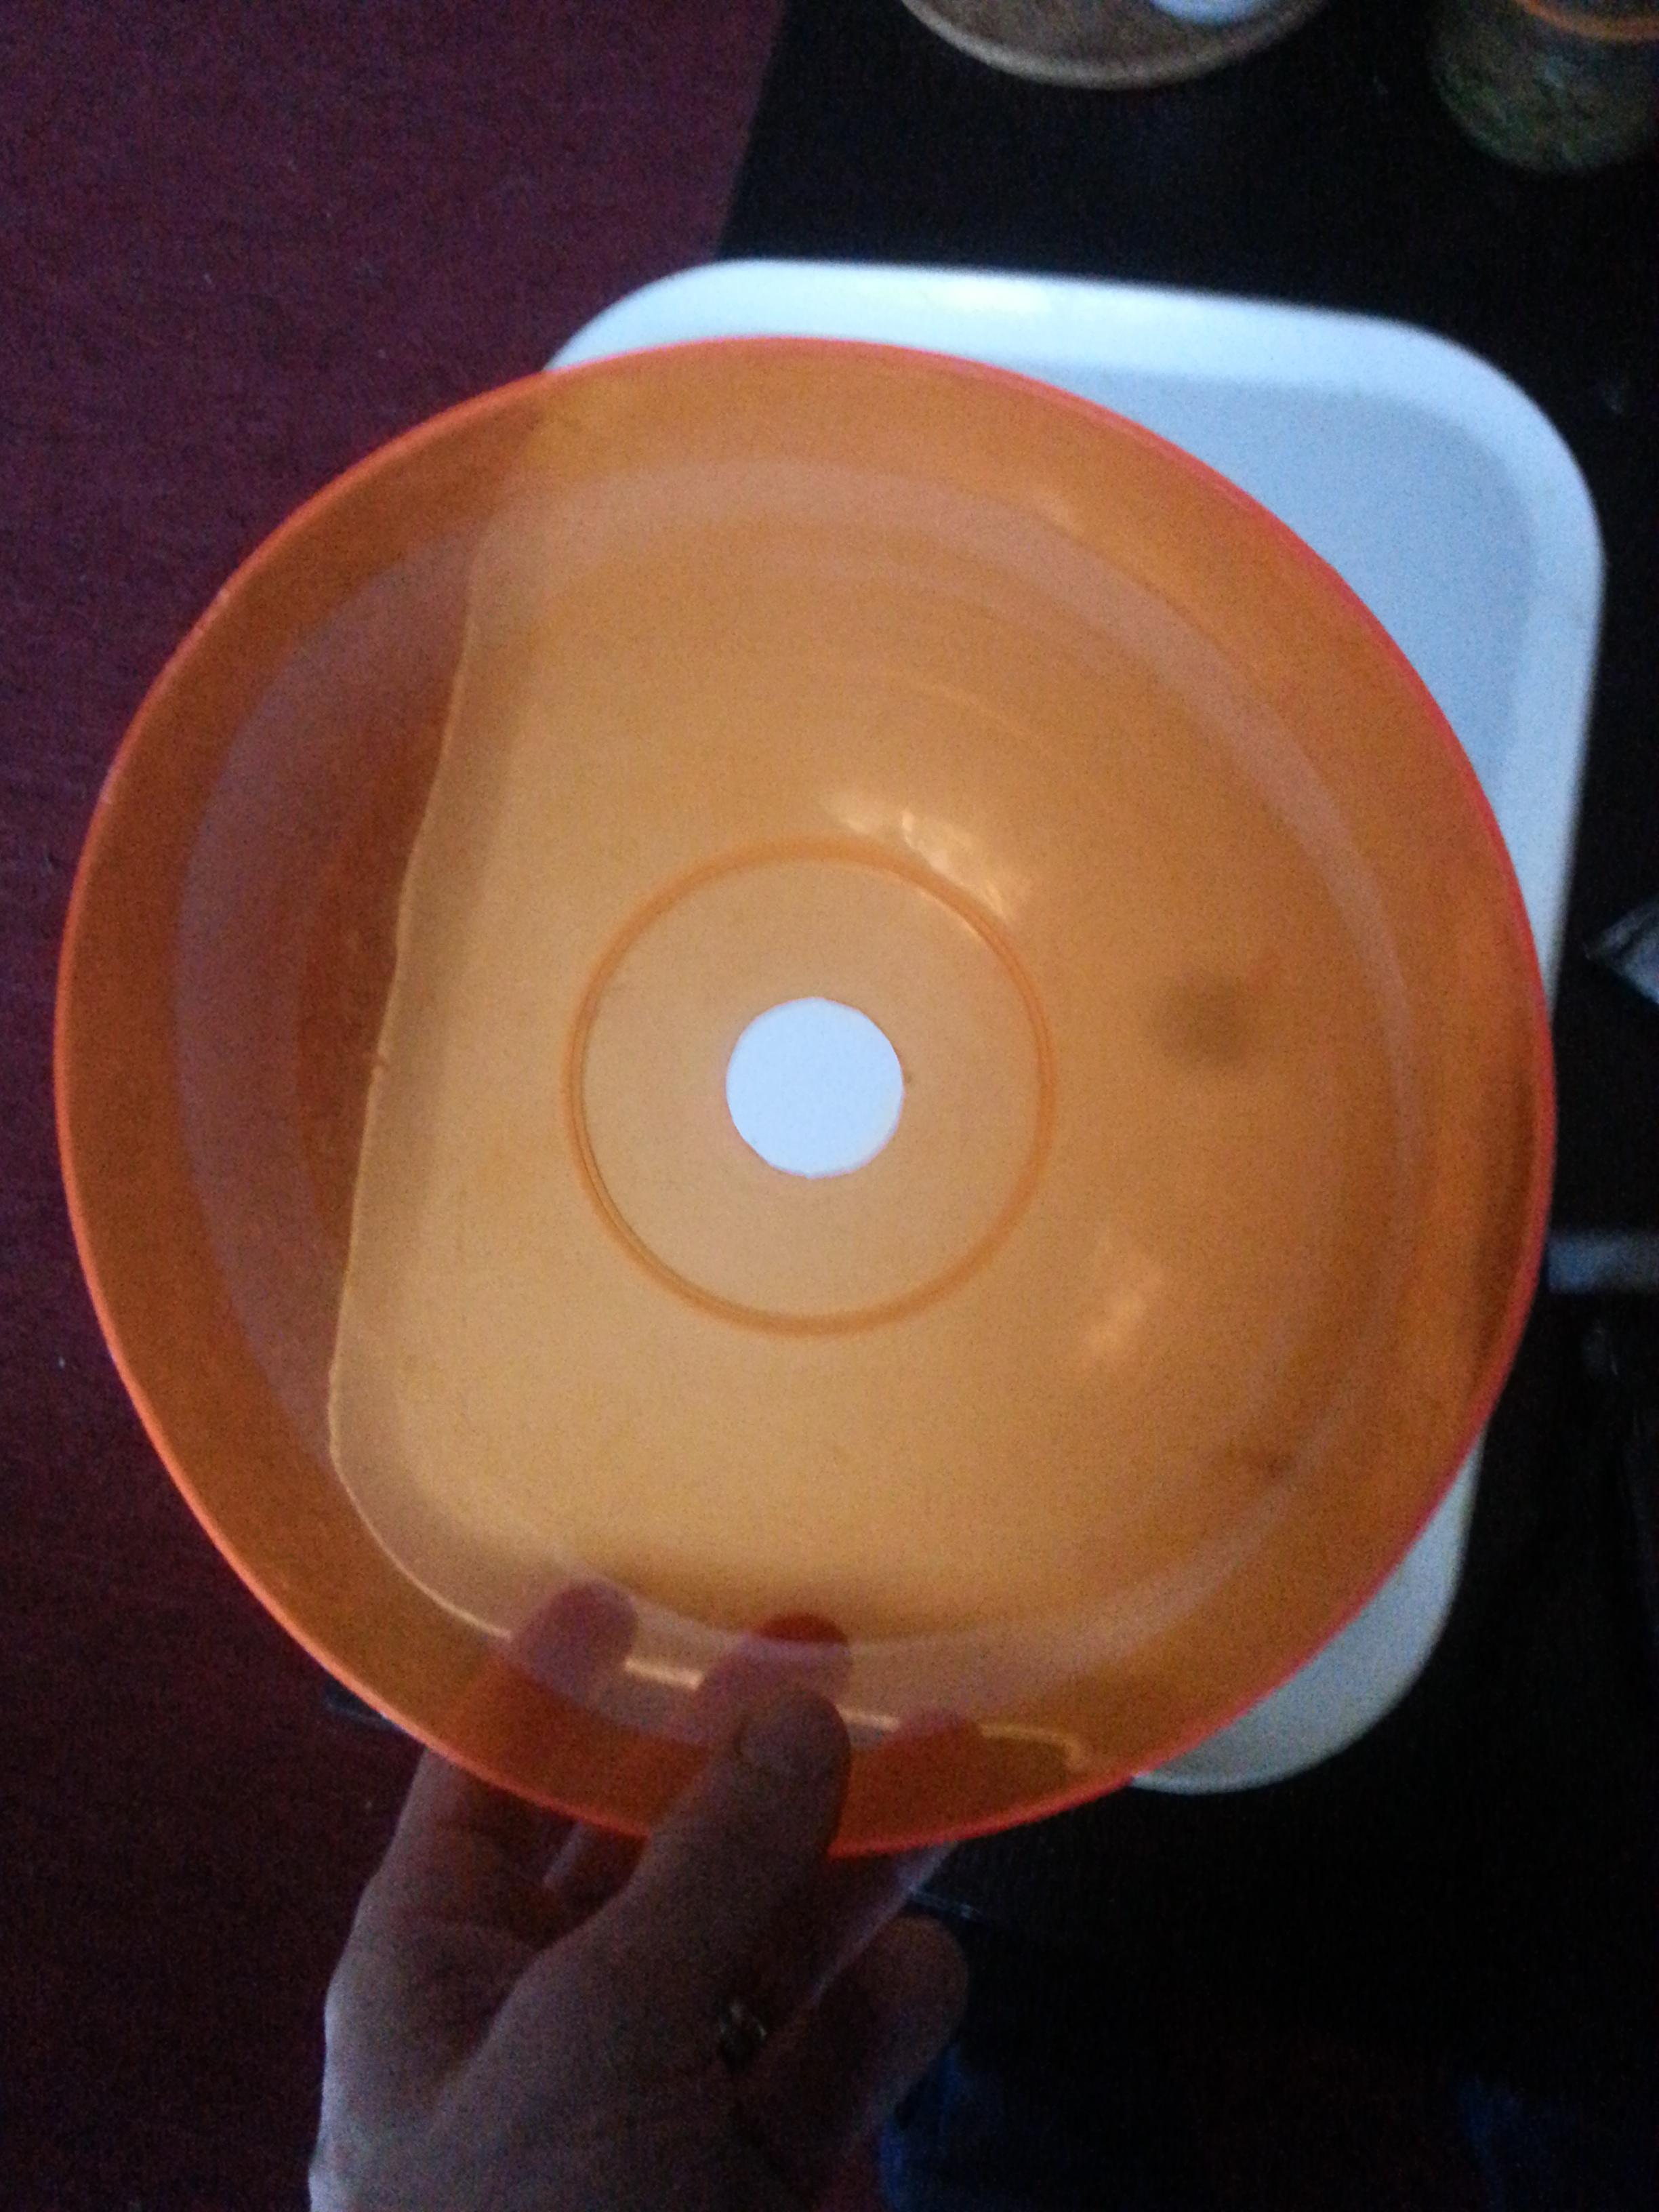 troc de troc bol orange (peut servir d'objet détourné comme une lampe) image 1